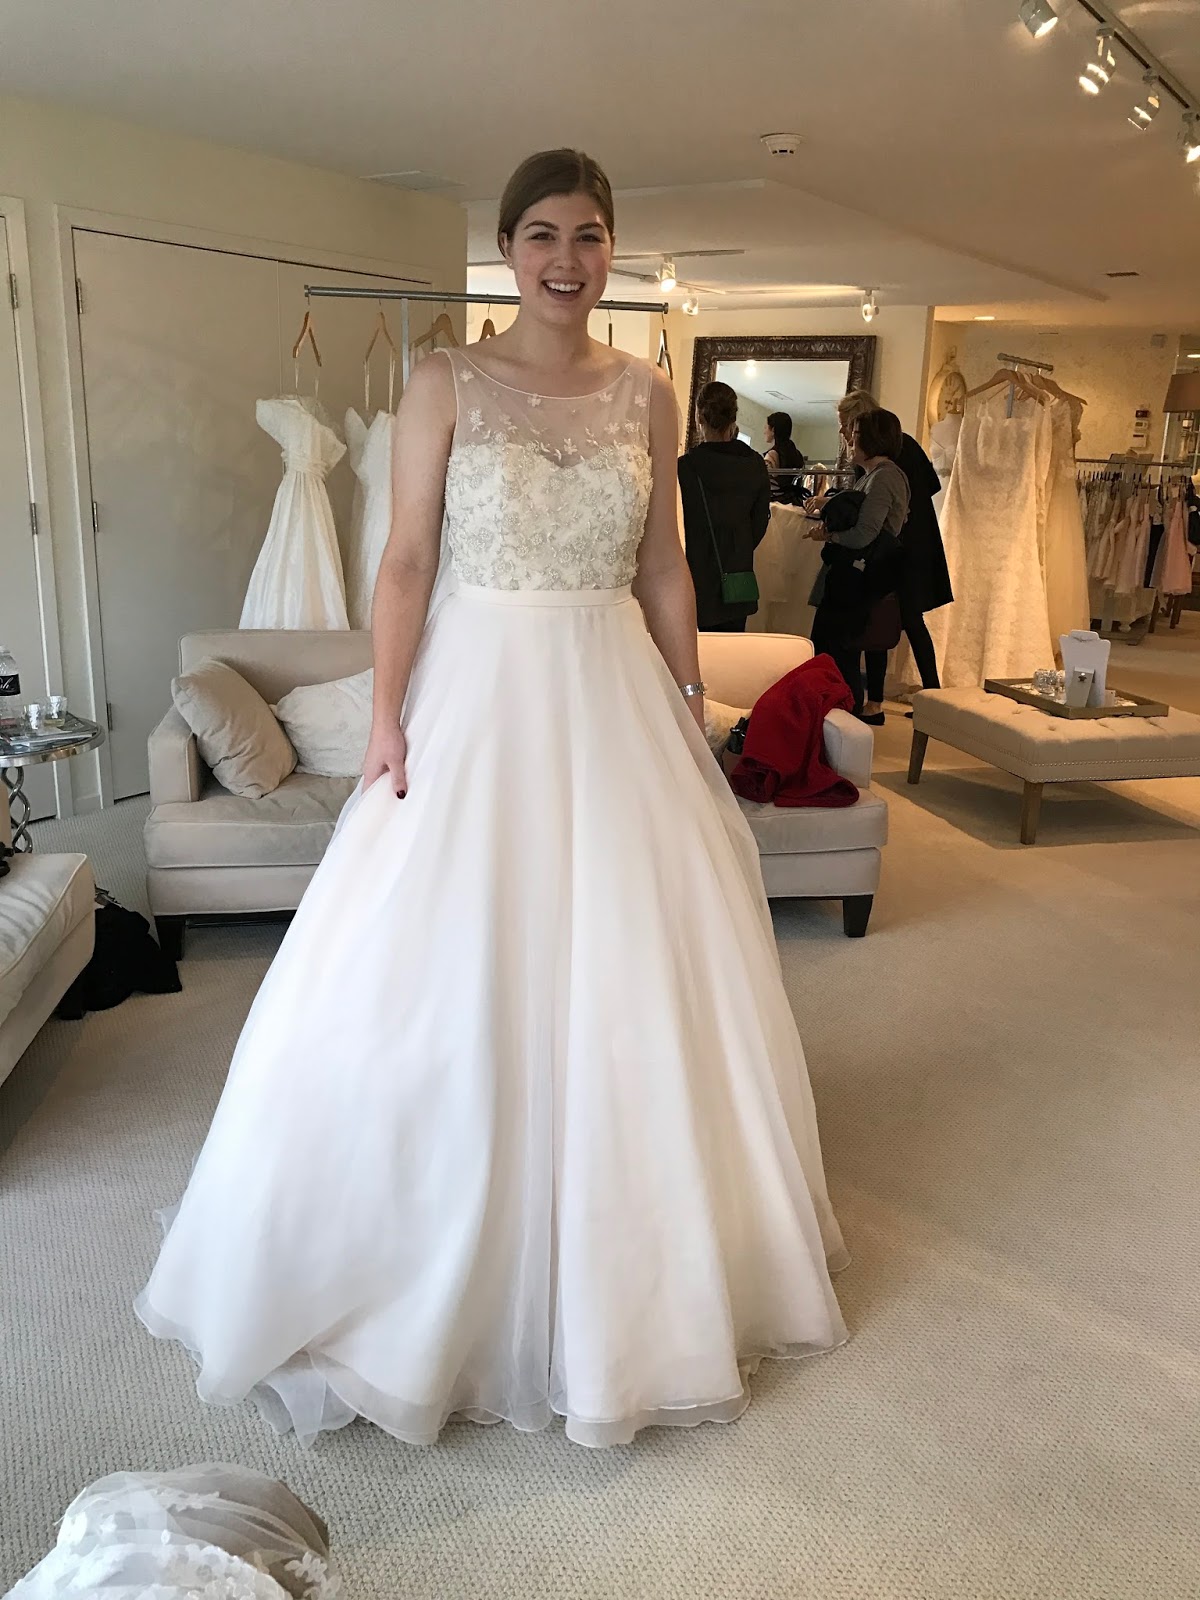 choosing-my-wedding-dress